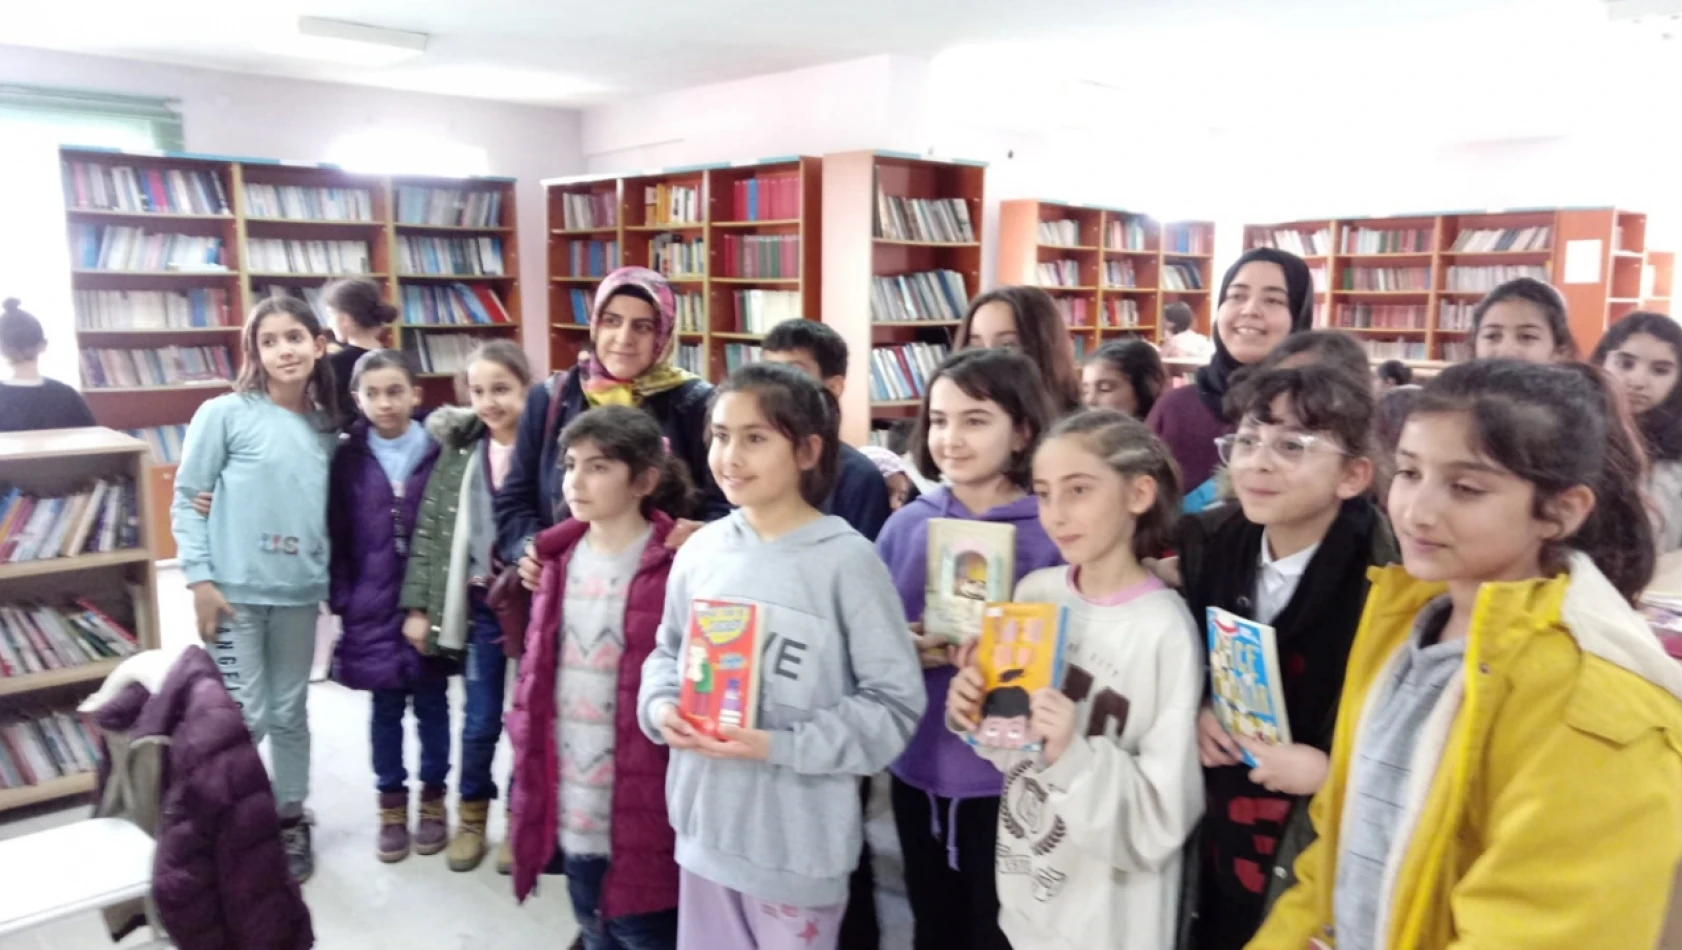 Baskil'de 'kütüphaneler haftası' dolayısıyla etkinlik yapıldı